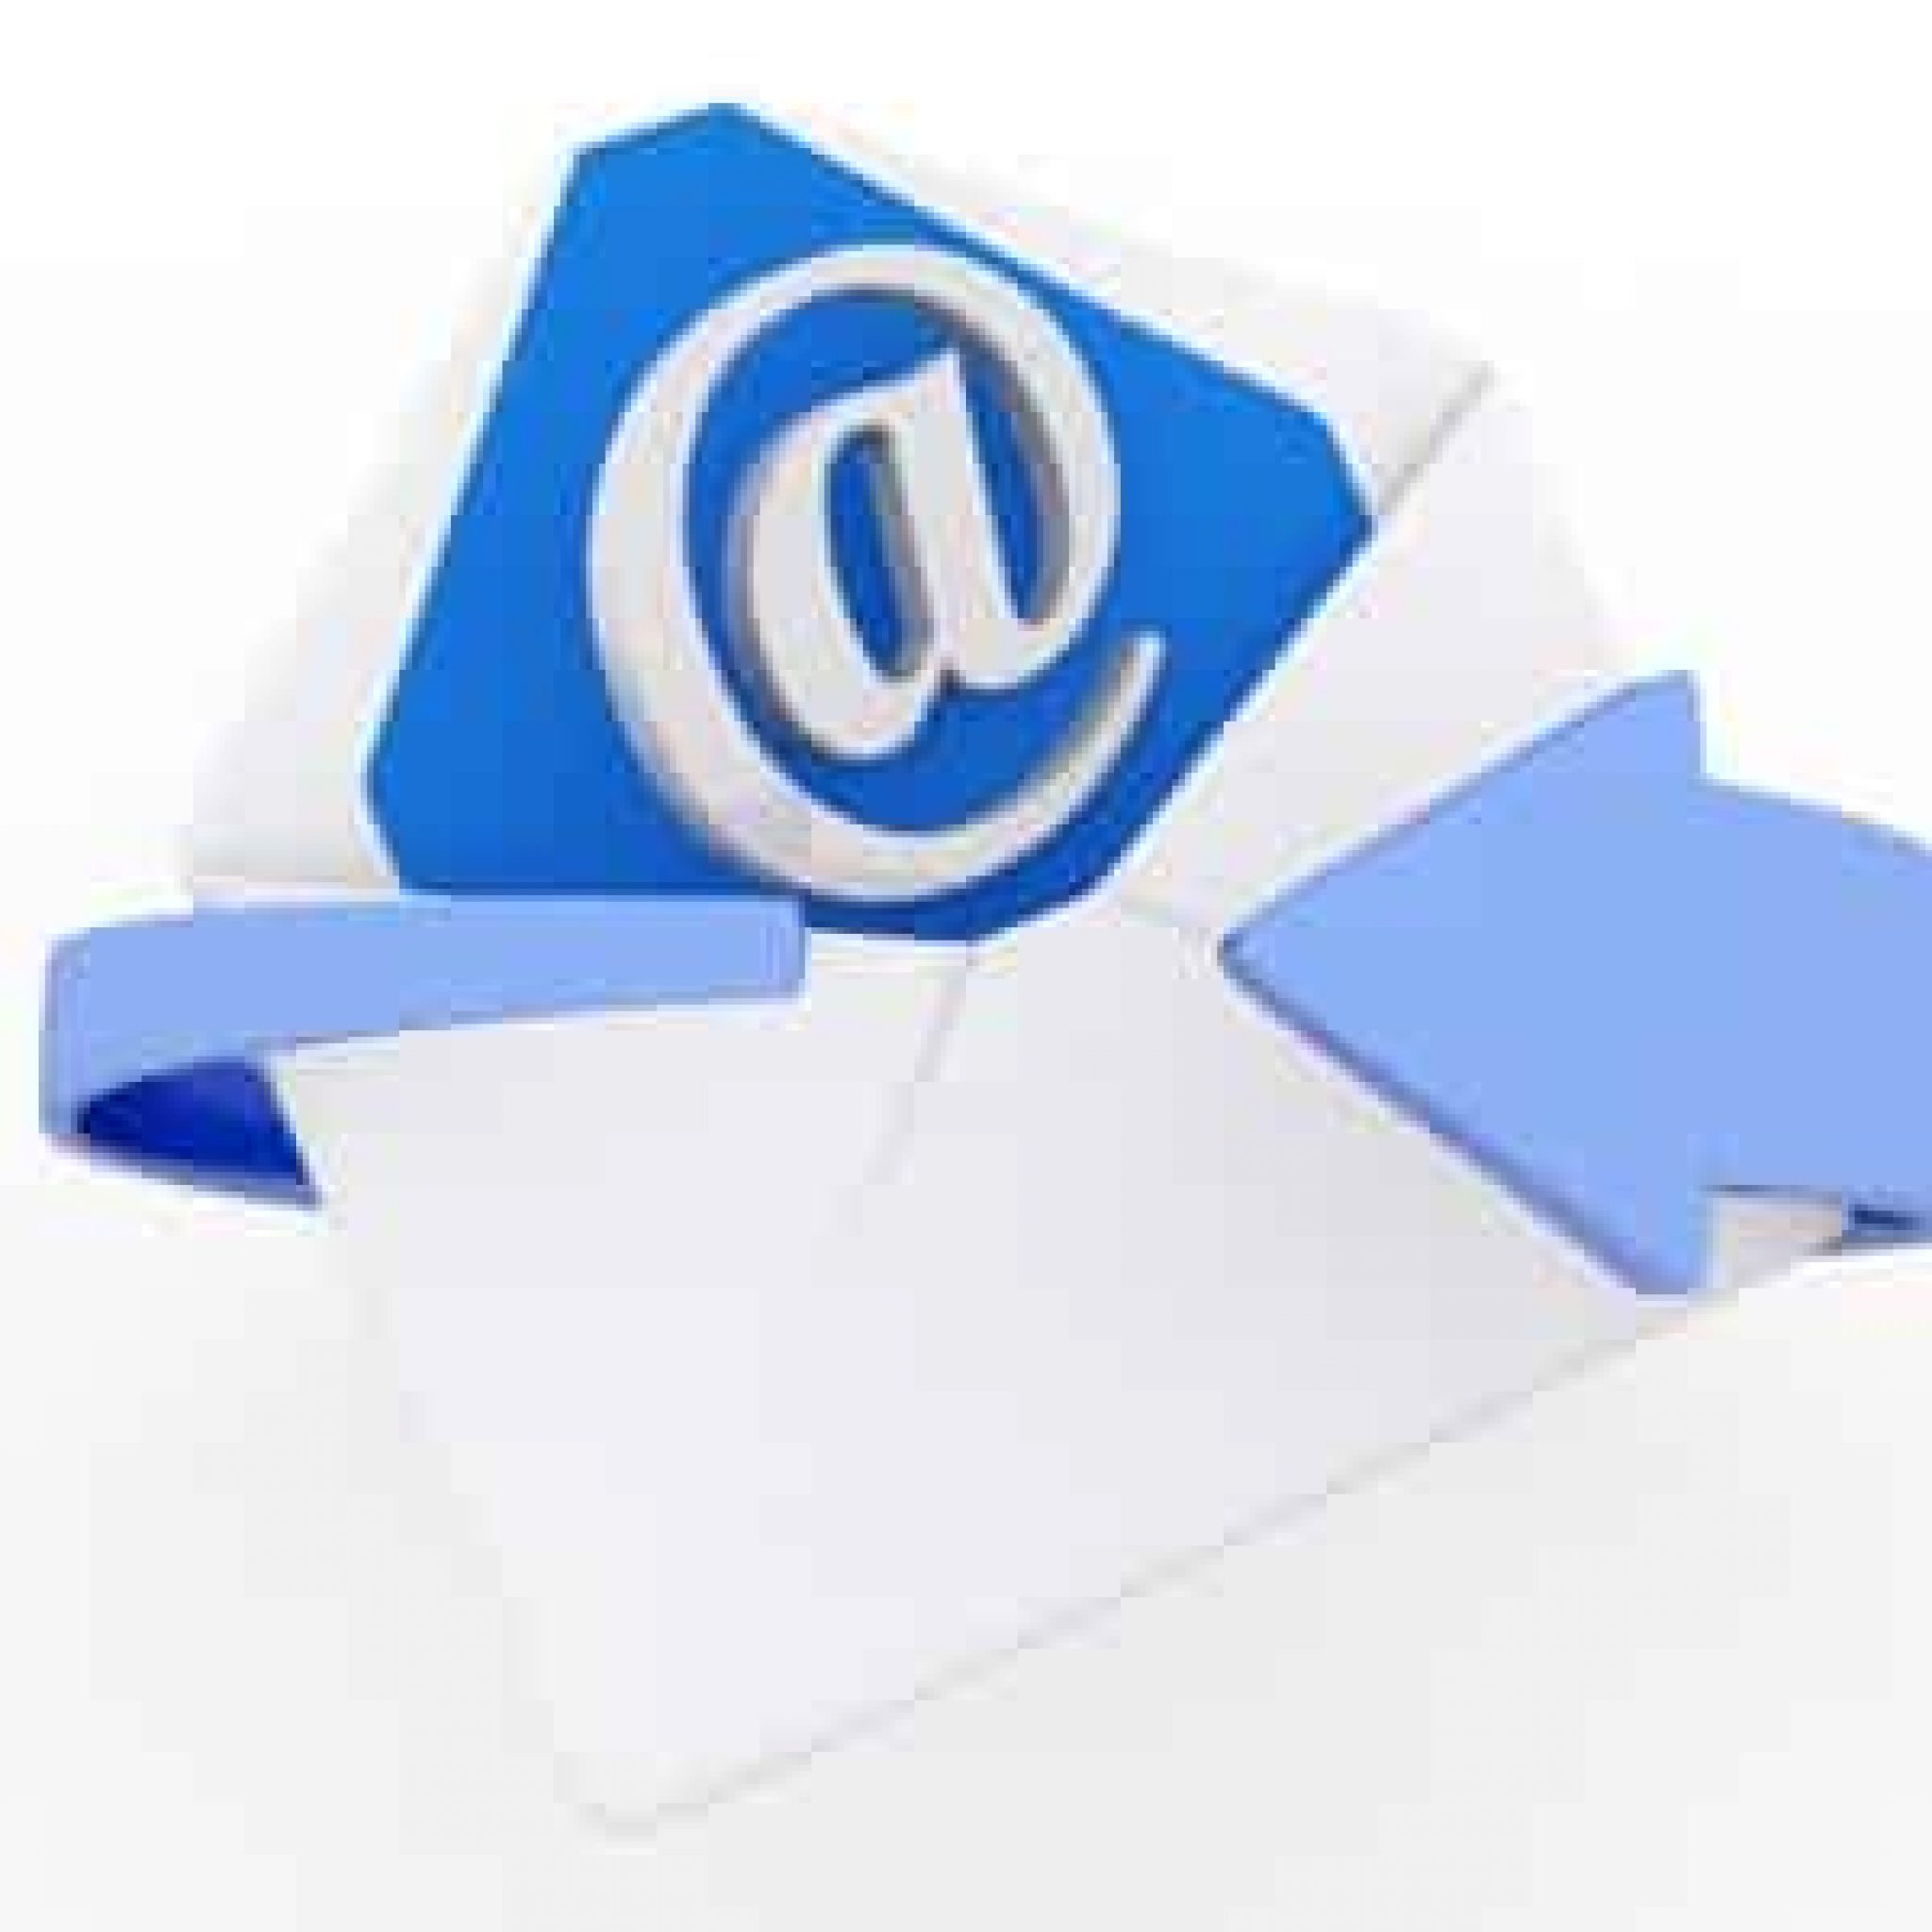 Cómo Saber Si Han Recibido Y Leído El Correo E-Mail Enviado